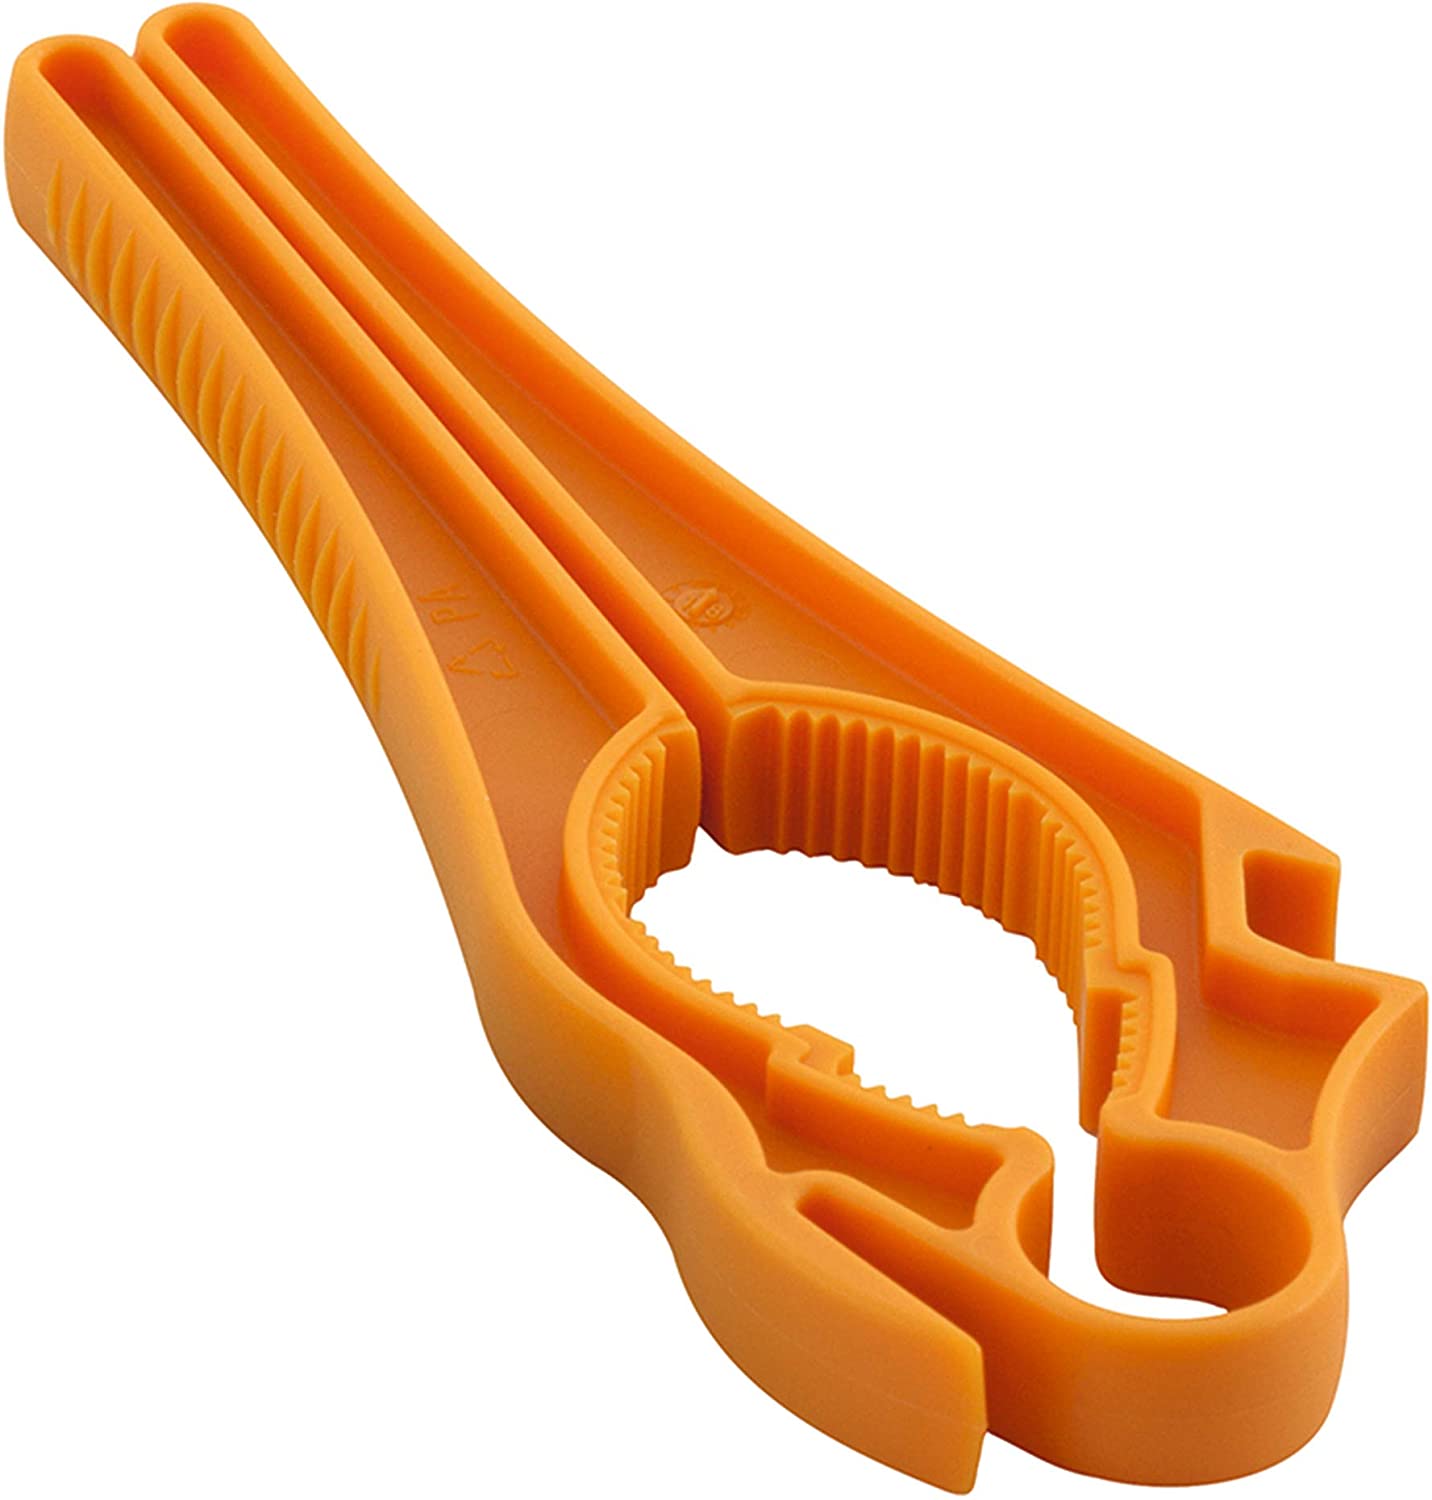 Kuhn Rikon 23096 5-in-1 Swiss Multi Opener Polyamide Orange